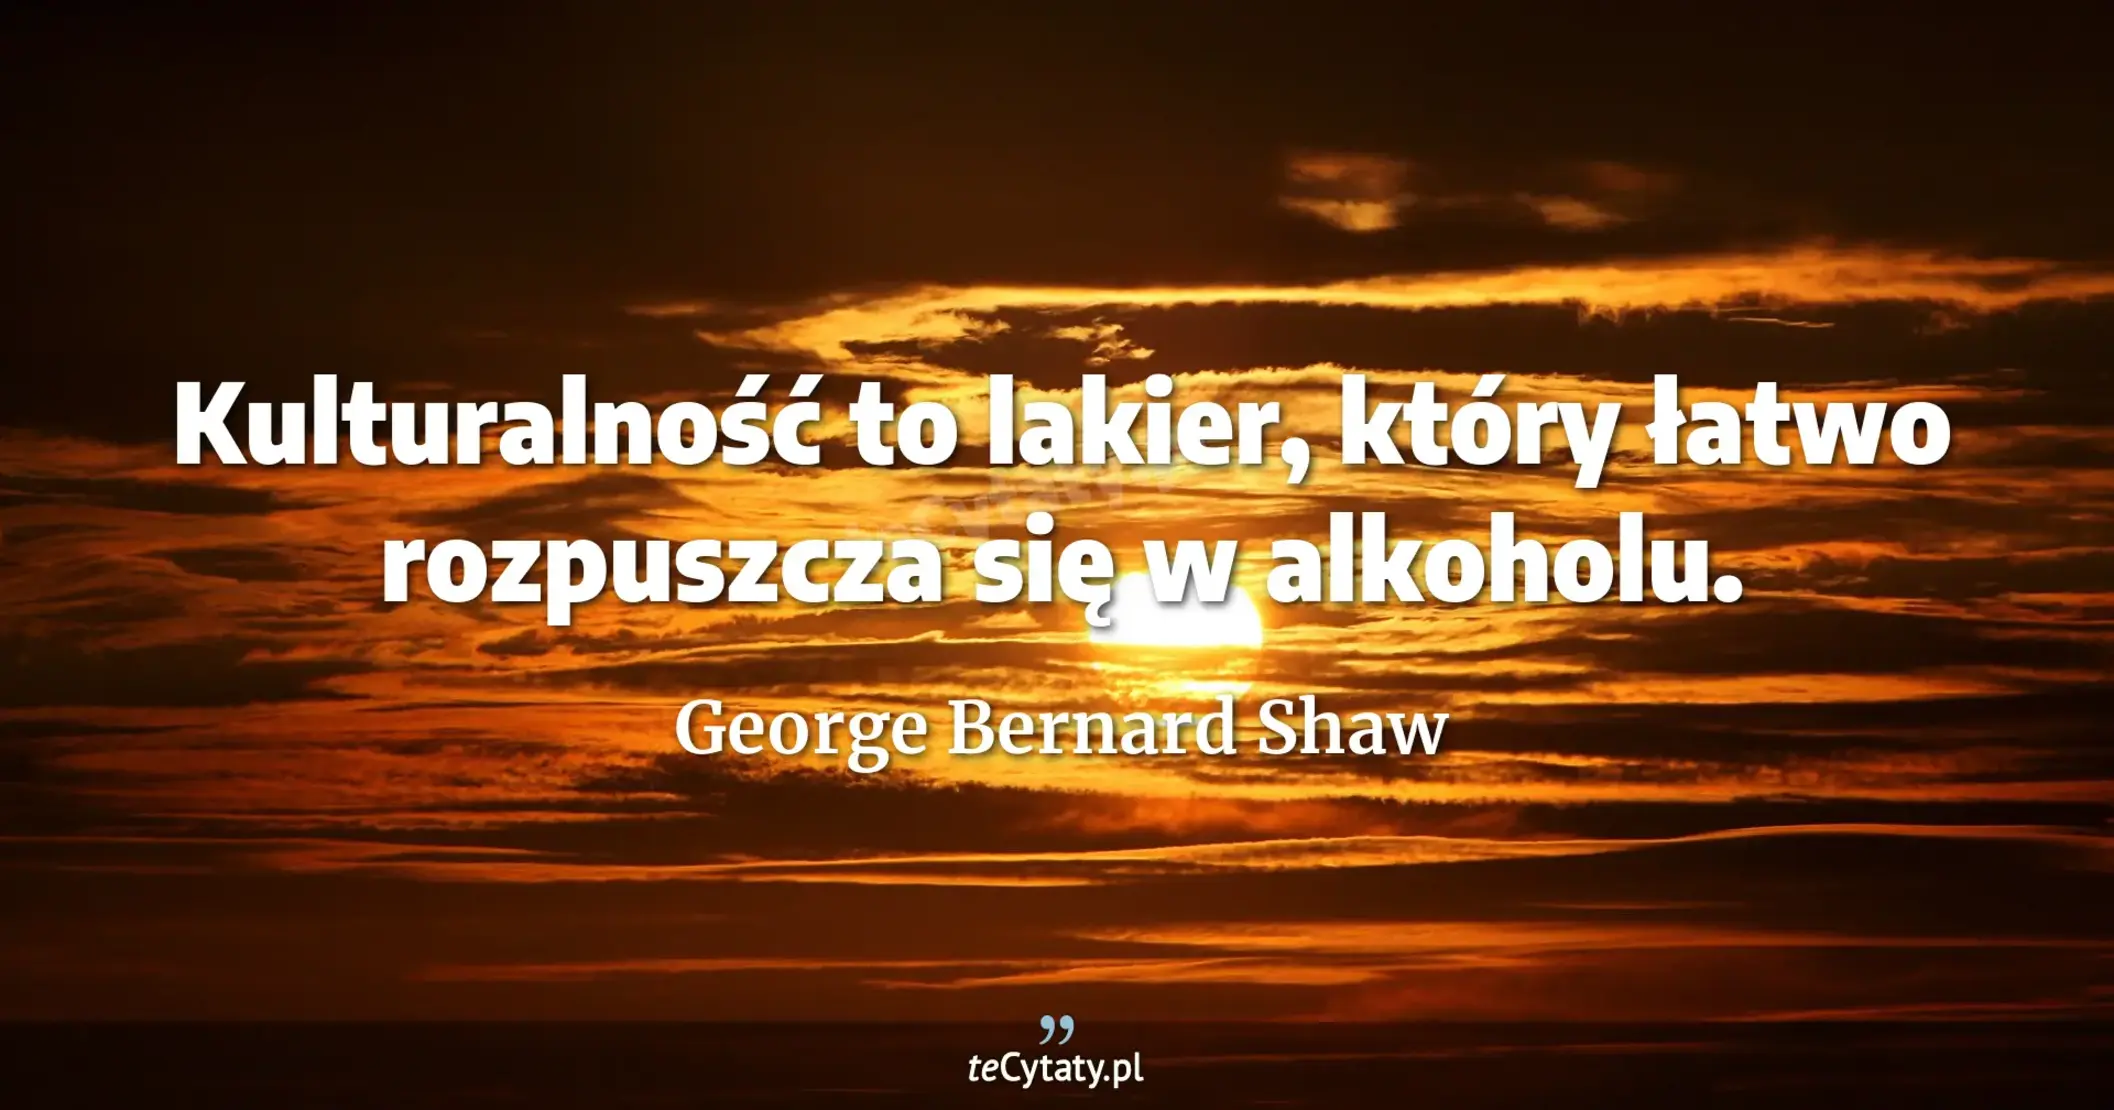 Kulturalność to lakier, który łatwo rozpuszcza się w alkoholu. - George Bernard Shaw